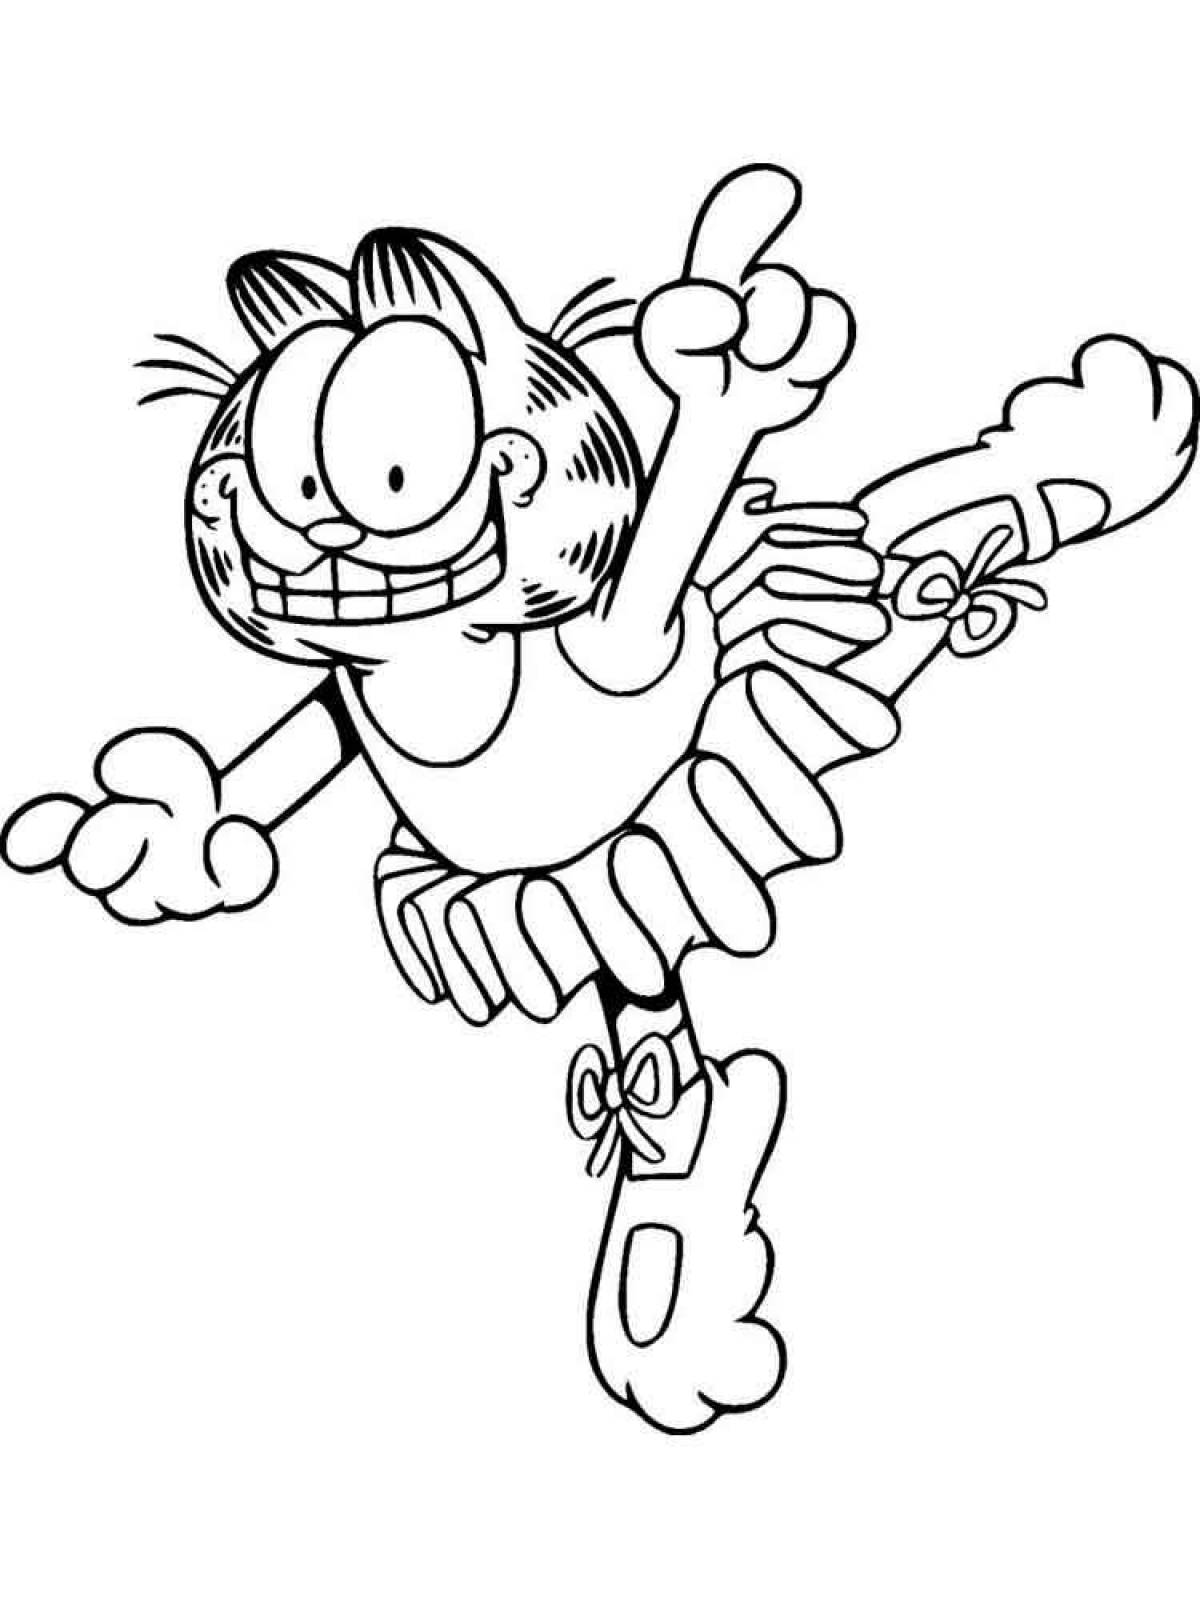 Garfield comic coloring book